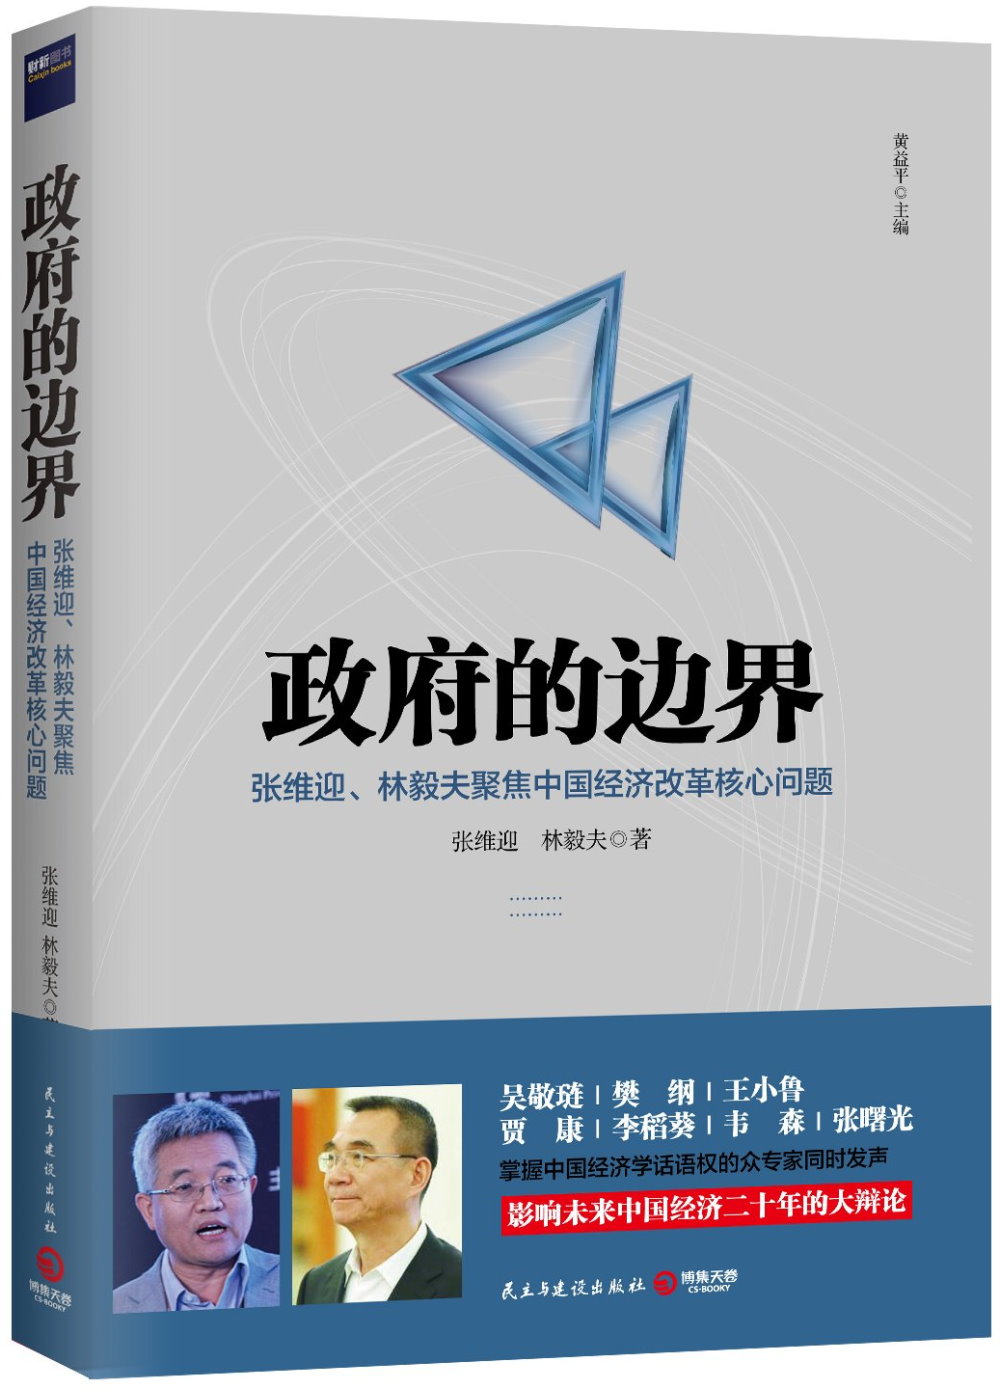 政府的邊界：張維迎、林毅夫聚焦中國經濟改革核心問題